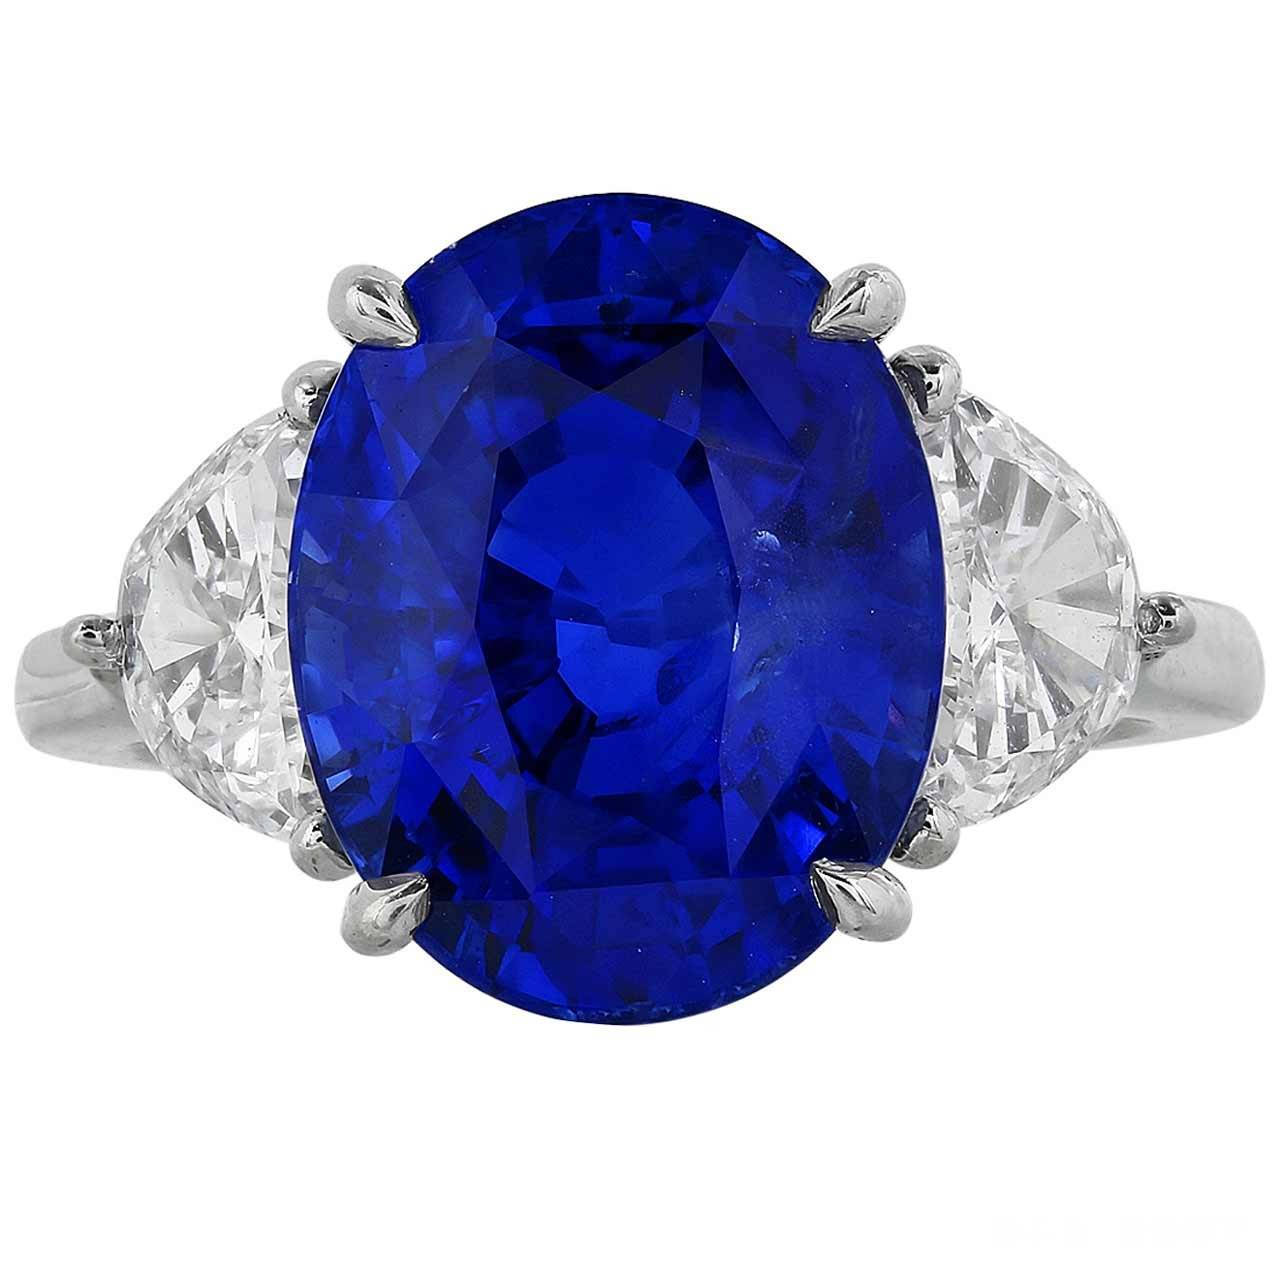 蓝宝石坦桑石价值(蓝宝石和坦桑石哪个收藏价值高)